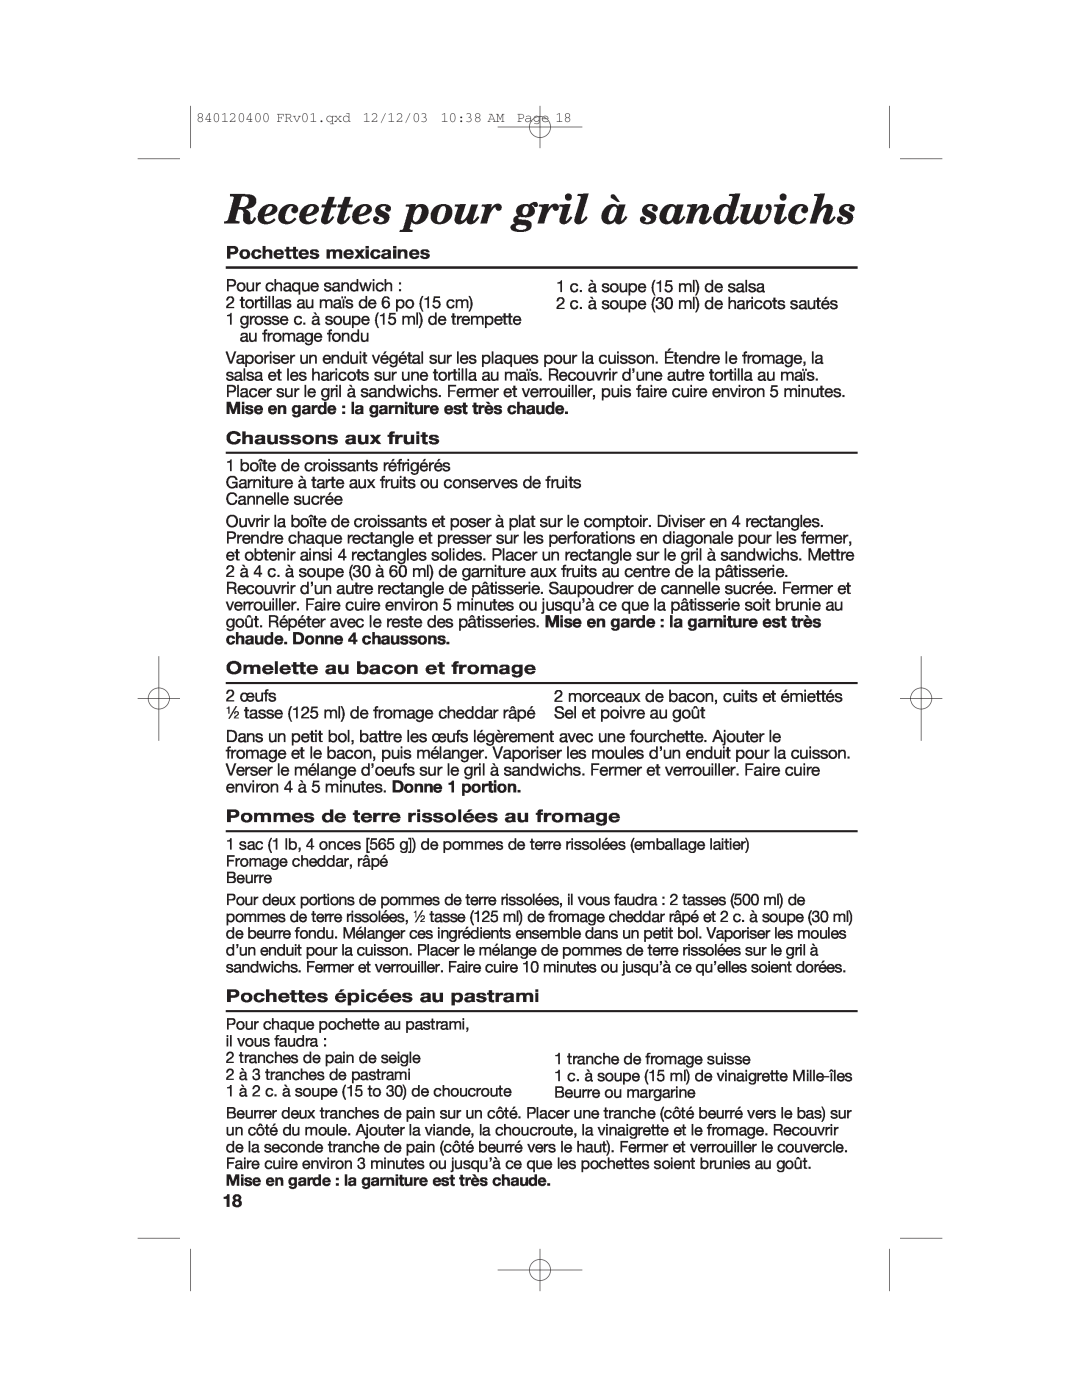 Hamilton Beach 26291 Recettes pour gril à sandwichs, Pochettes mexicaines, Mise en garde la garniture est très chaude 